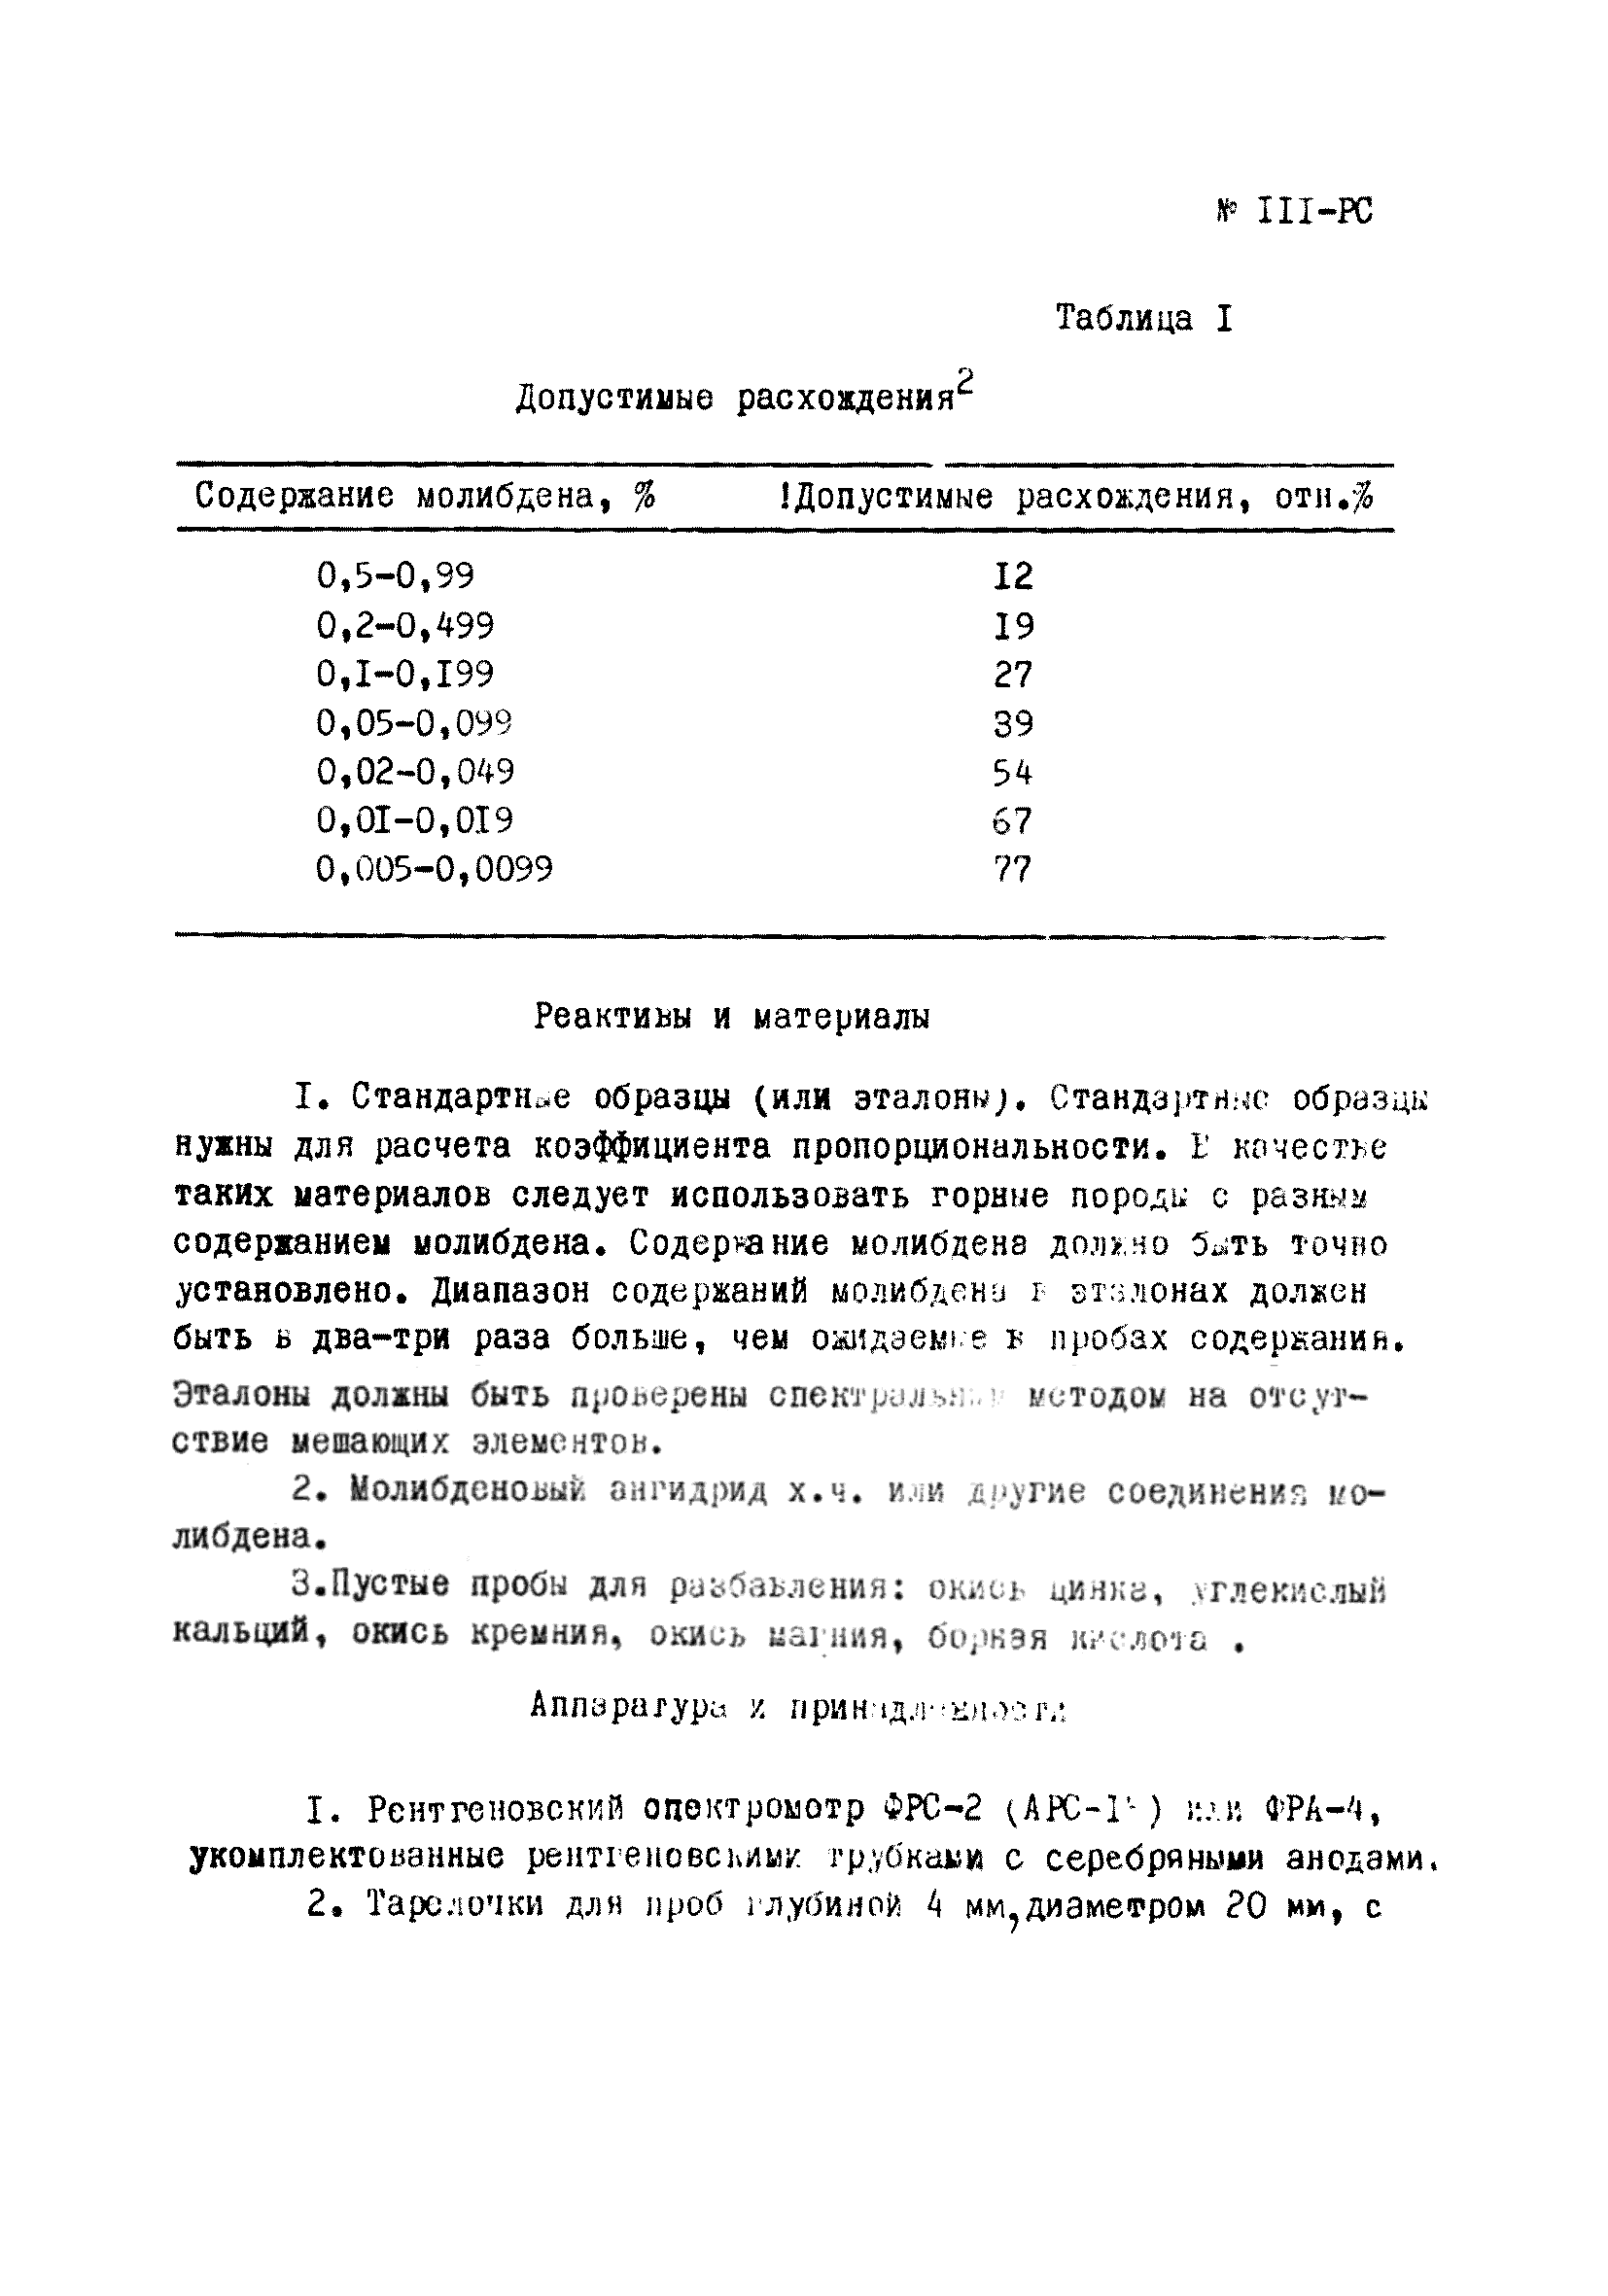 Инструкция НСАМ 111-РС